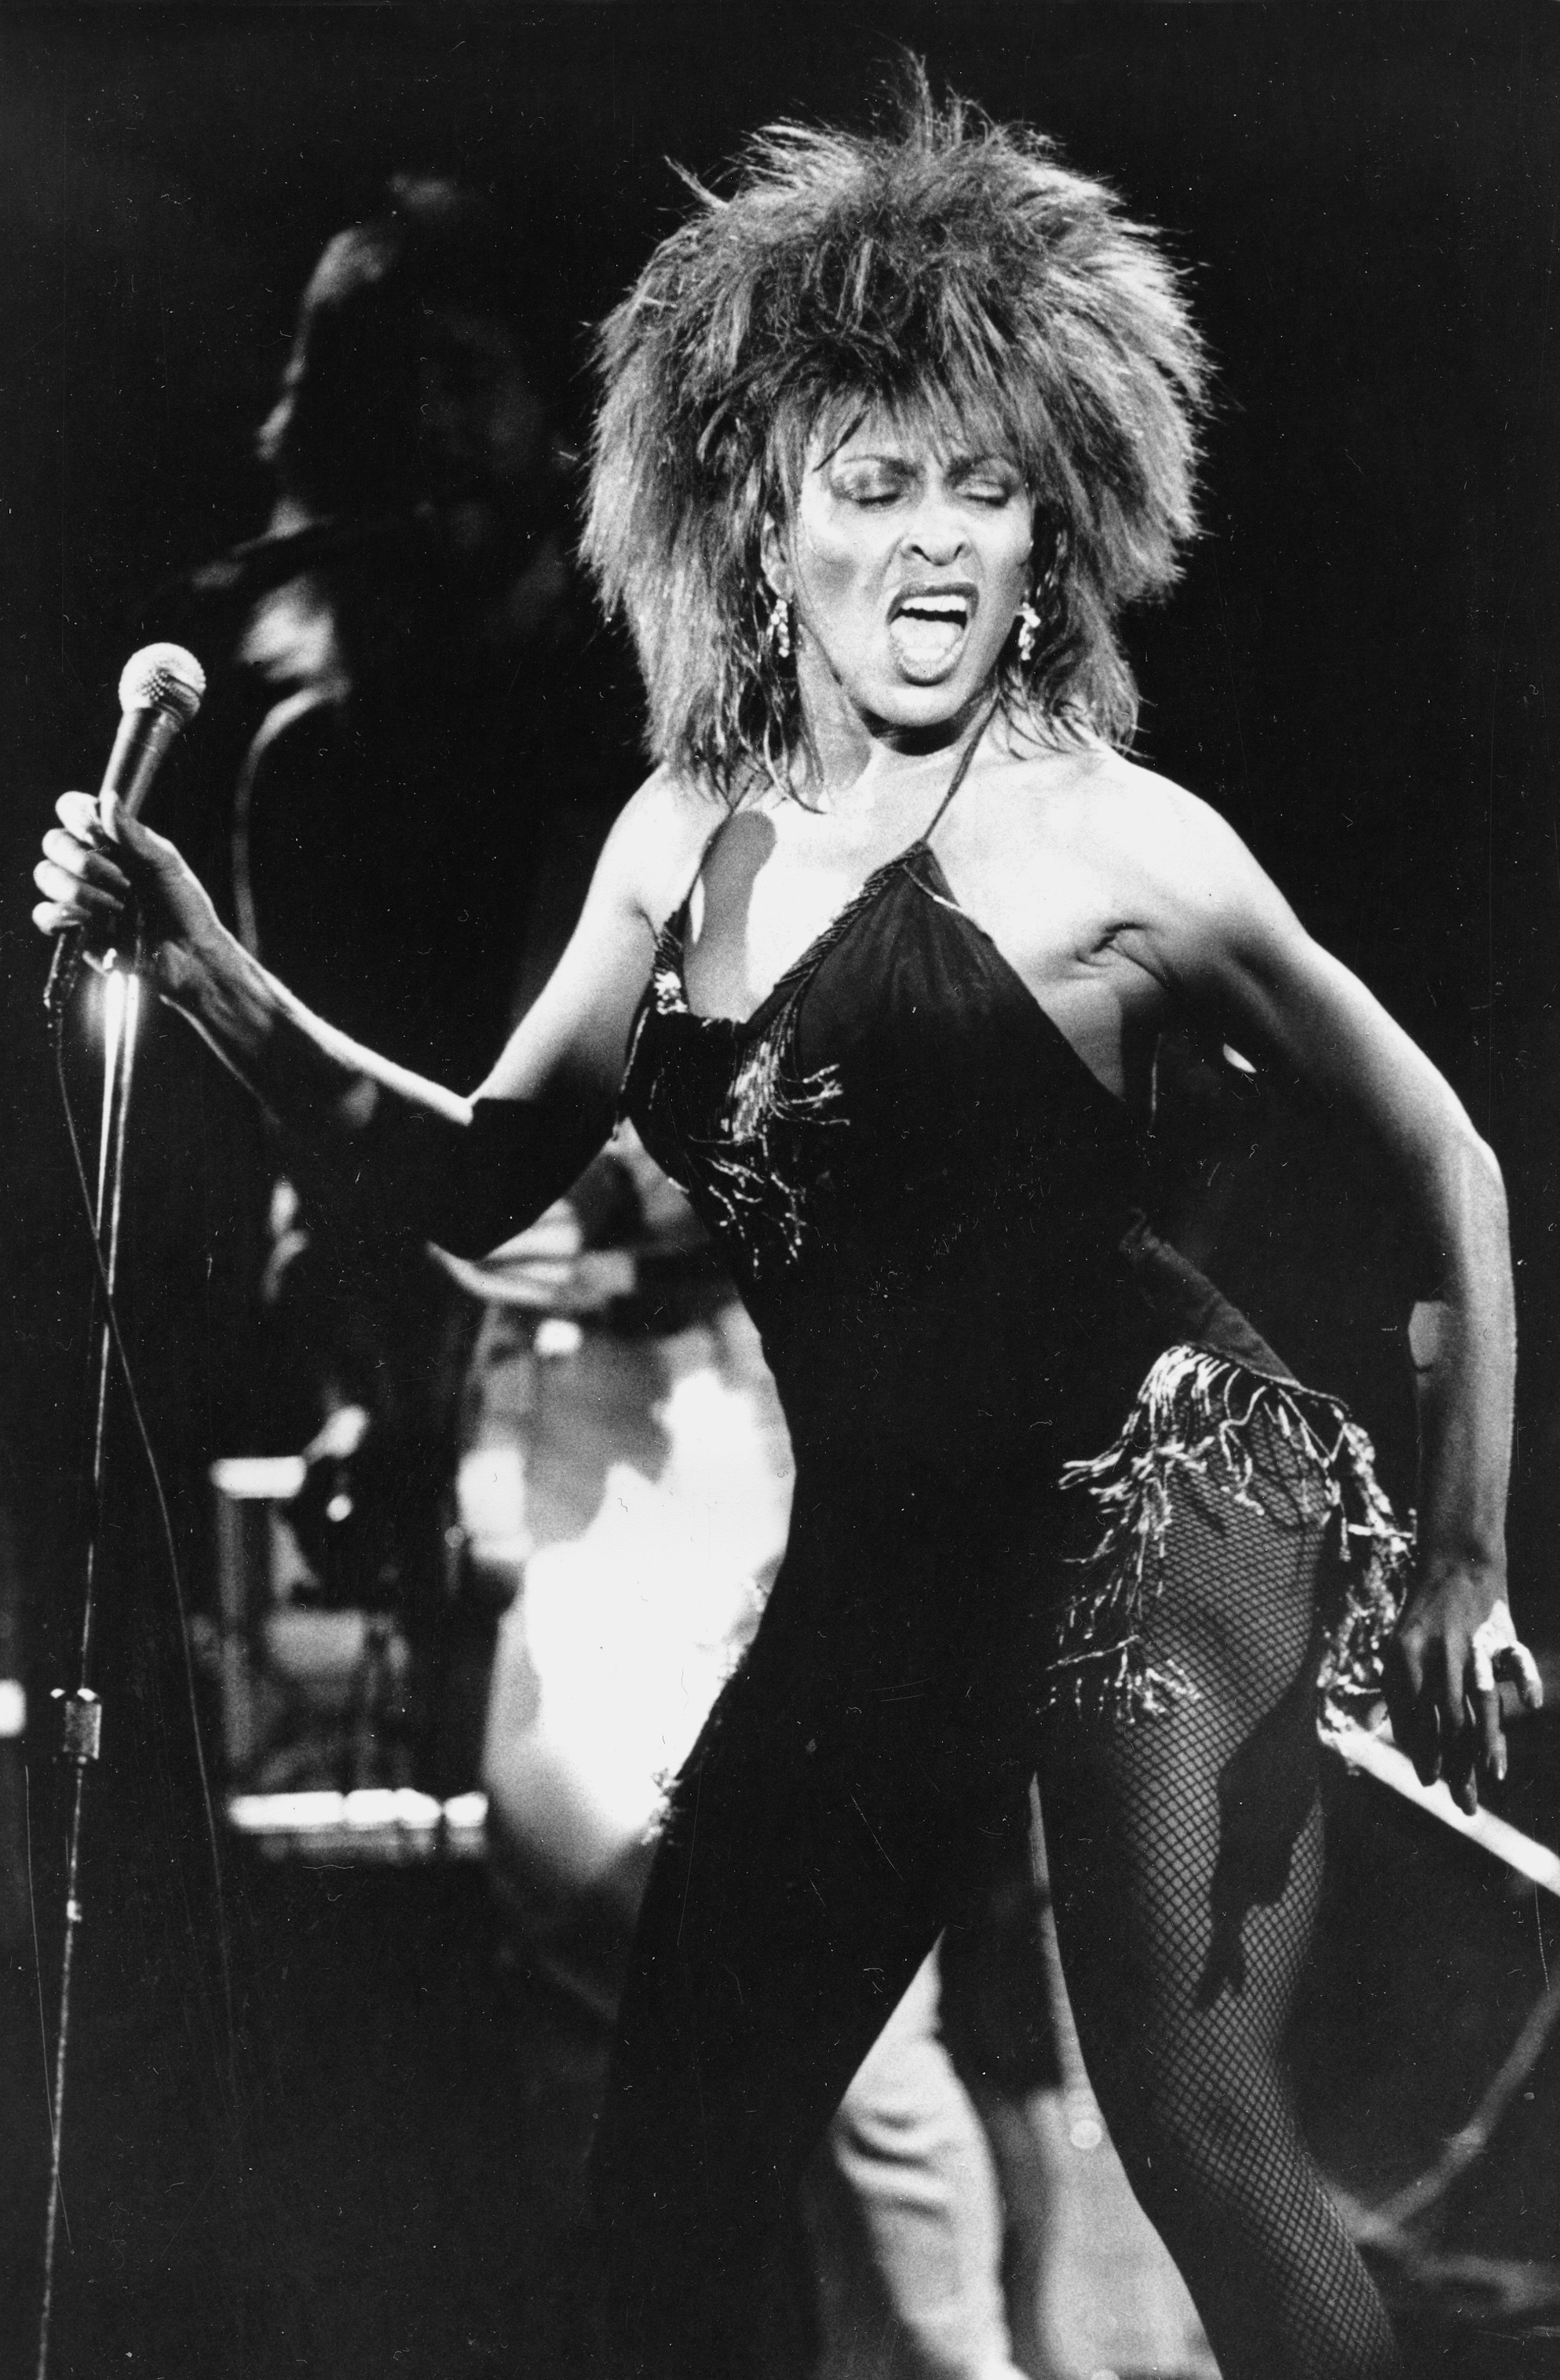 La chanteuse Tina Turner est décédée à 83 ans - La Libre